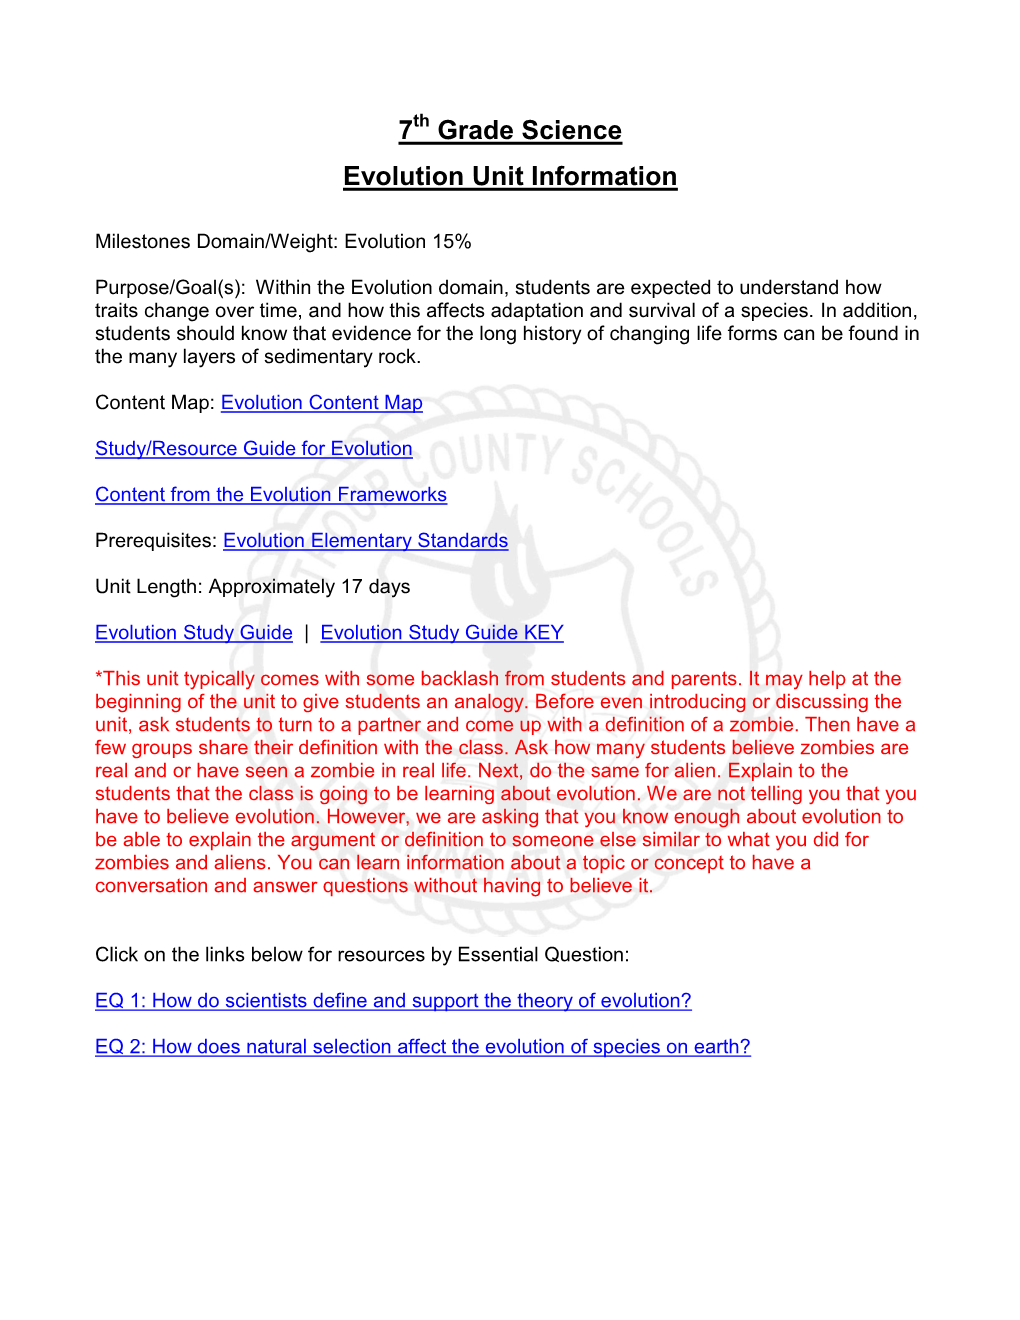 7 Grade Science Evolution Unit Information